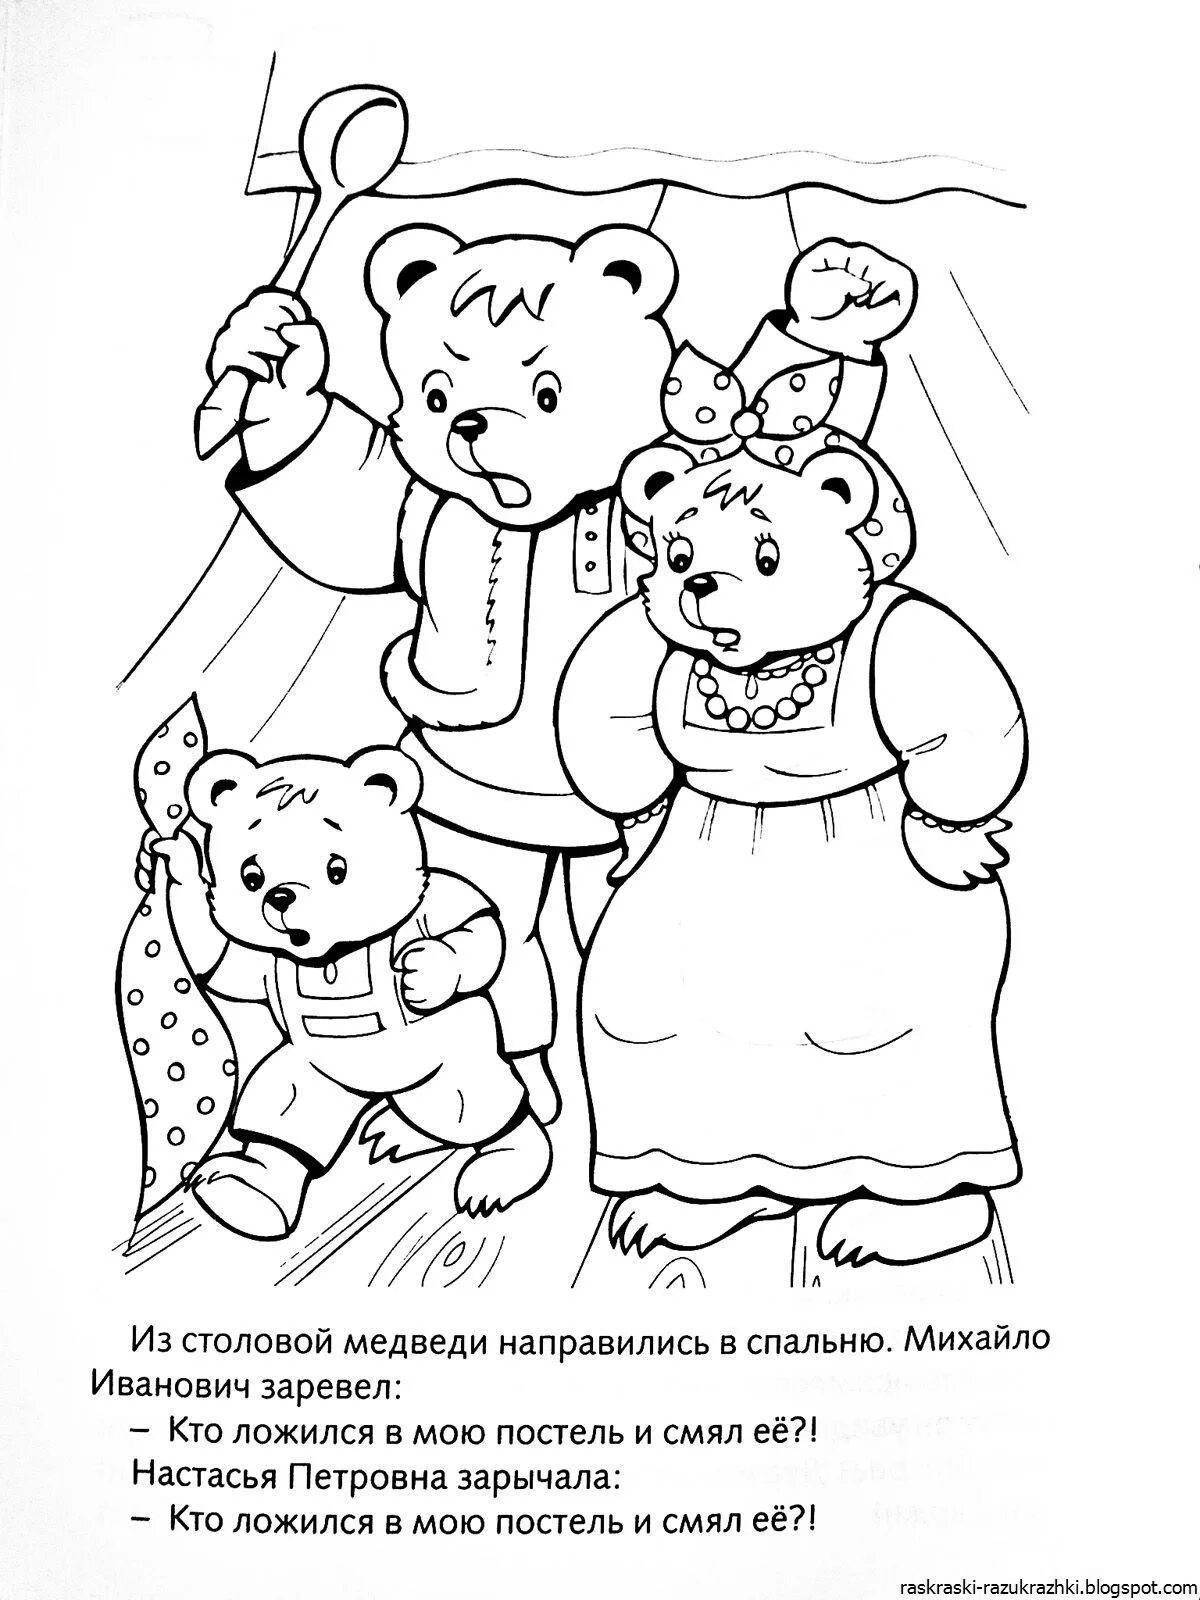 Joyful coloring of Russian folk tales for preschoolers